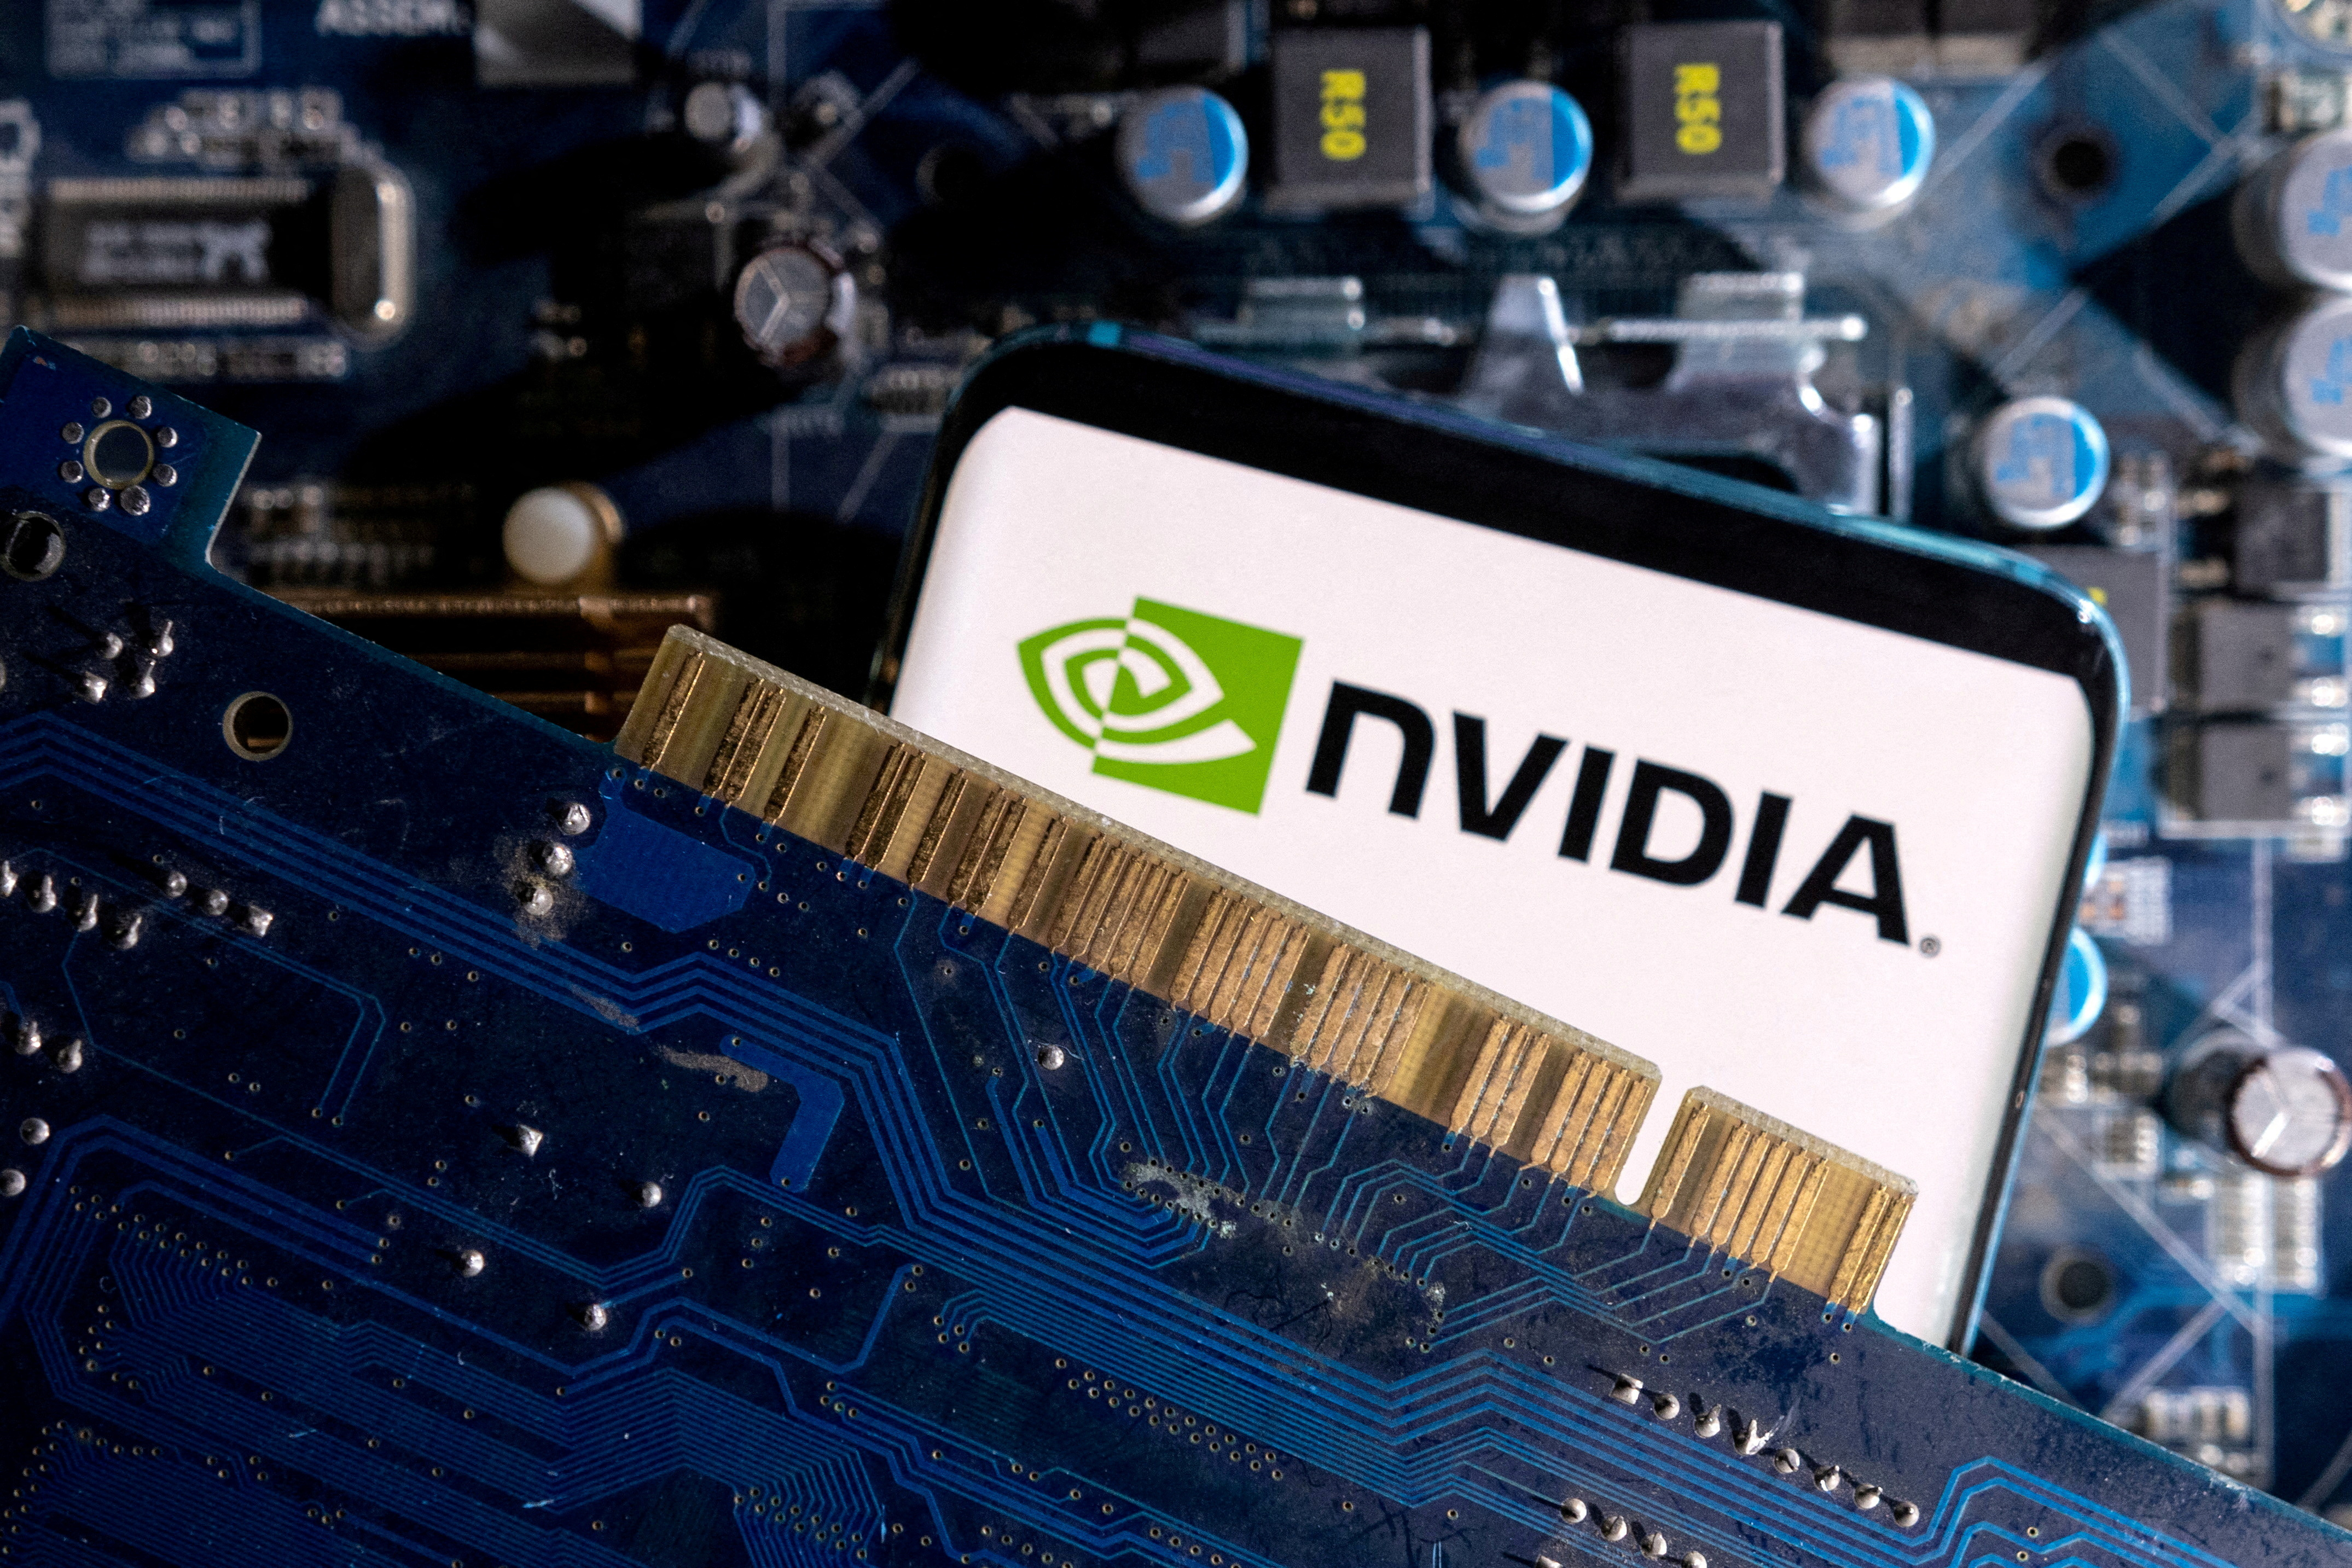 IA : les Bourses mondiales suspendues aux résultats de Nvidia attendus de nouveau en hausse spectaculaire